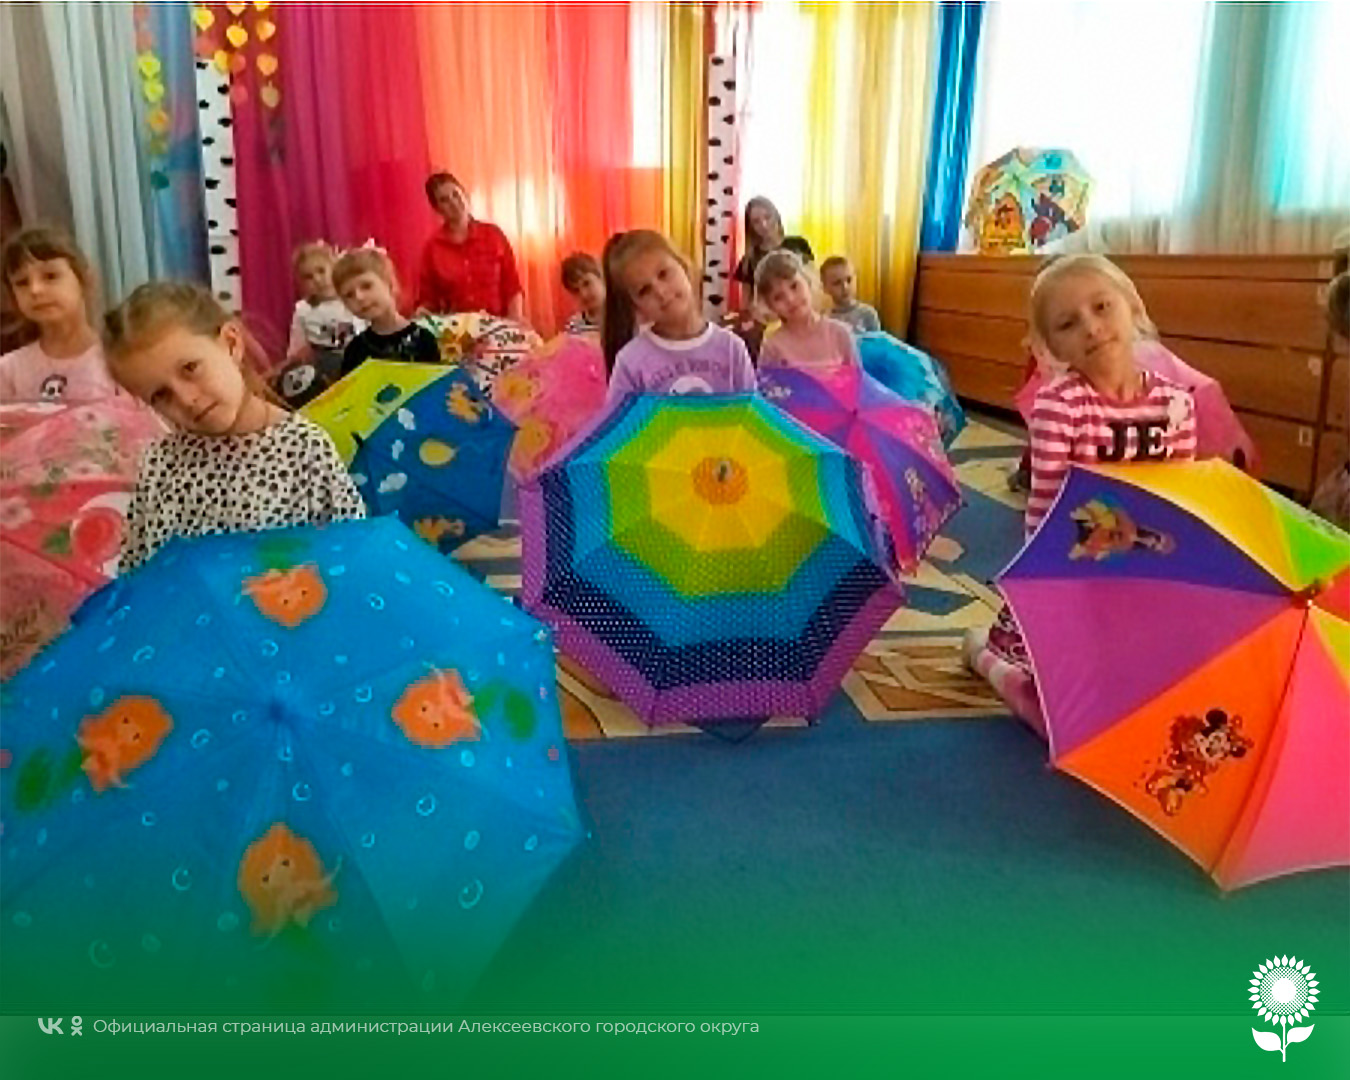 Воспитанники детских садов Алексеевского городского округа отметили интересный и необычный праздник – День разноцветных зонтов.